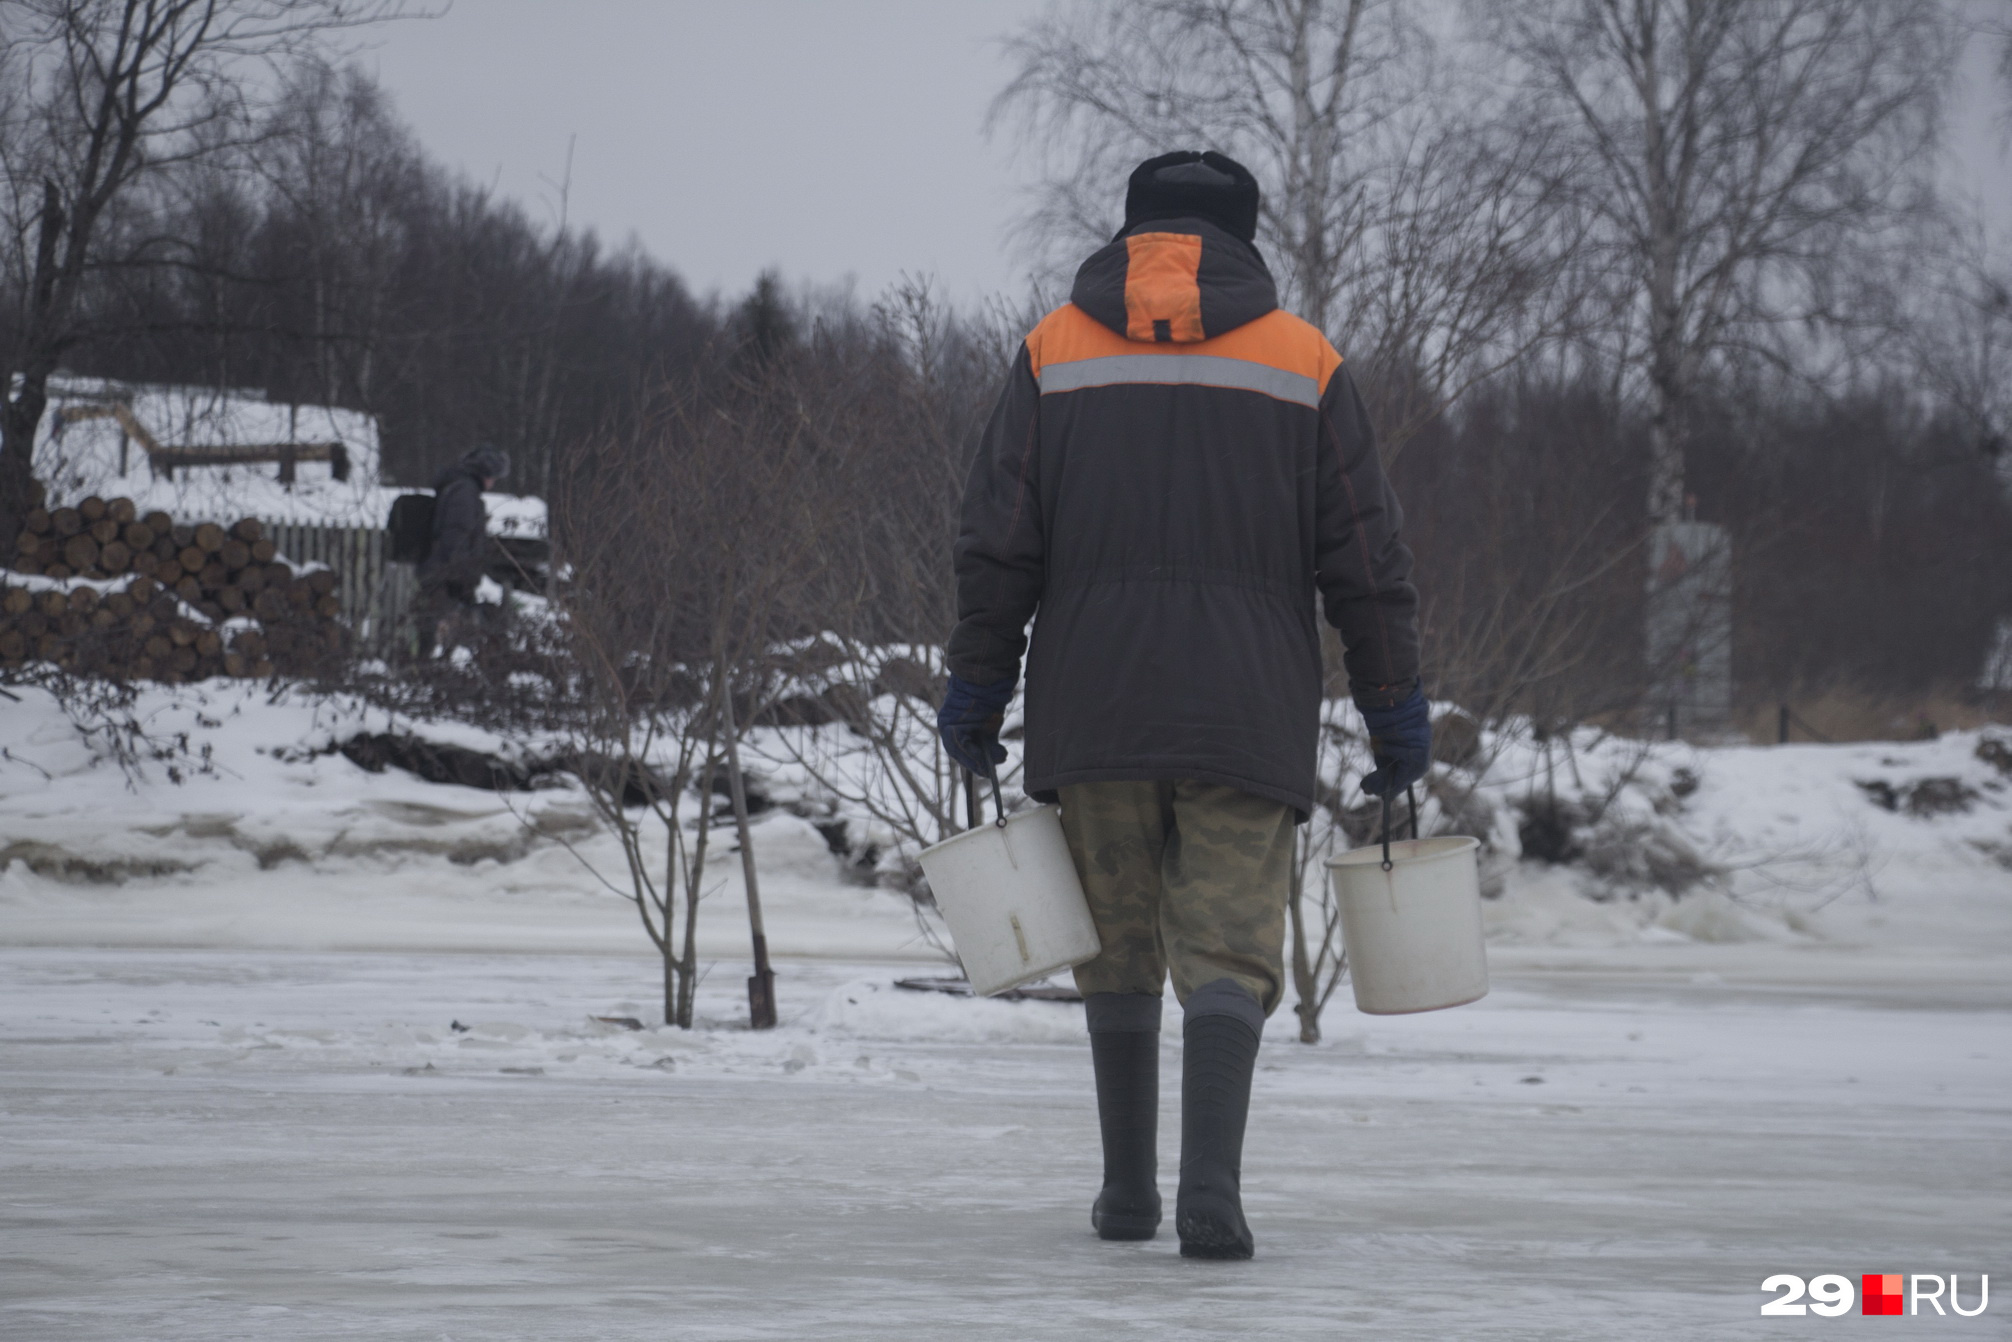 В деревне есть чем заняться зимой, считают местные. На рыбалку сходить, за водой сбегать, печь растопить